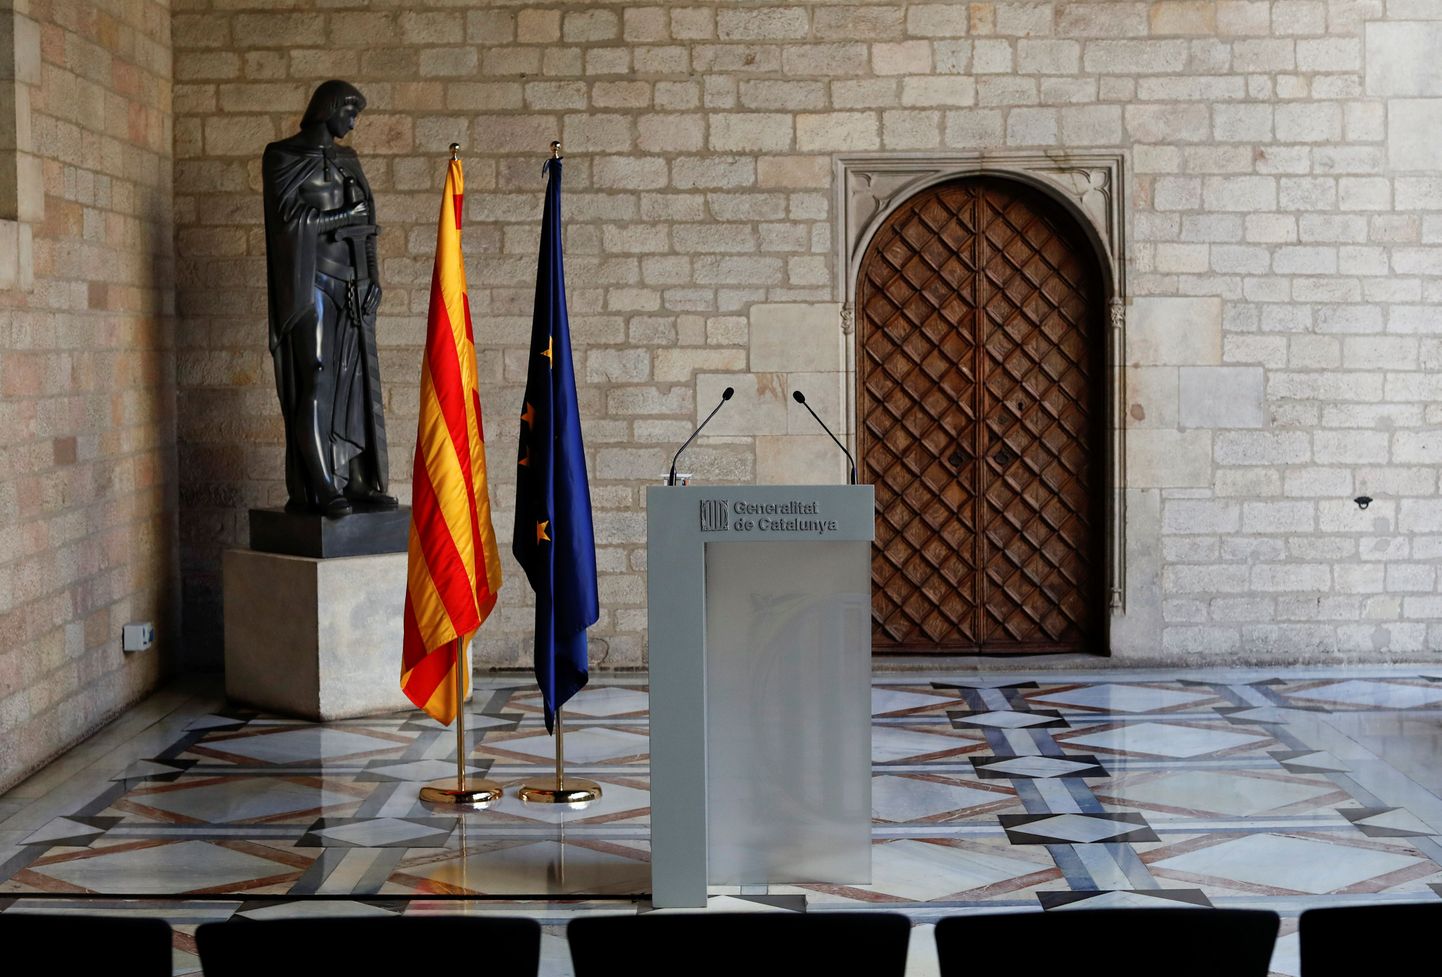 Siin pidi pöördumisega esinema Carles Puigdemont.